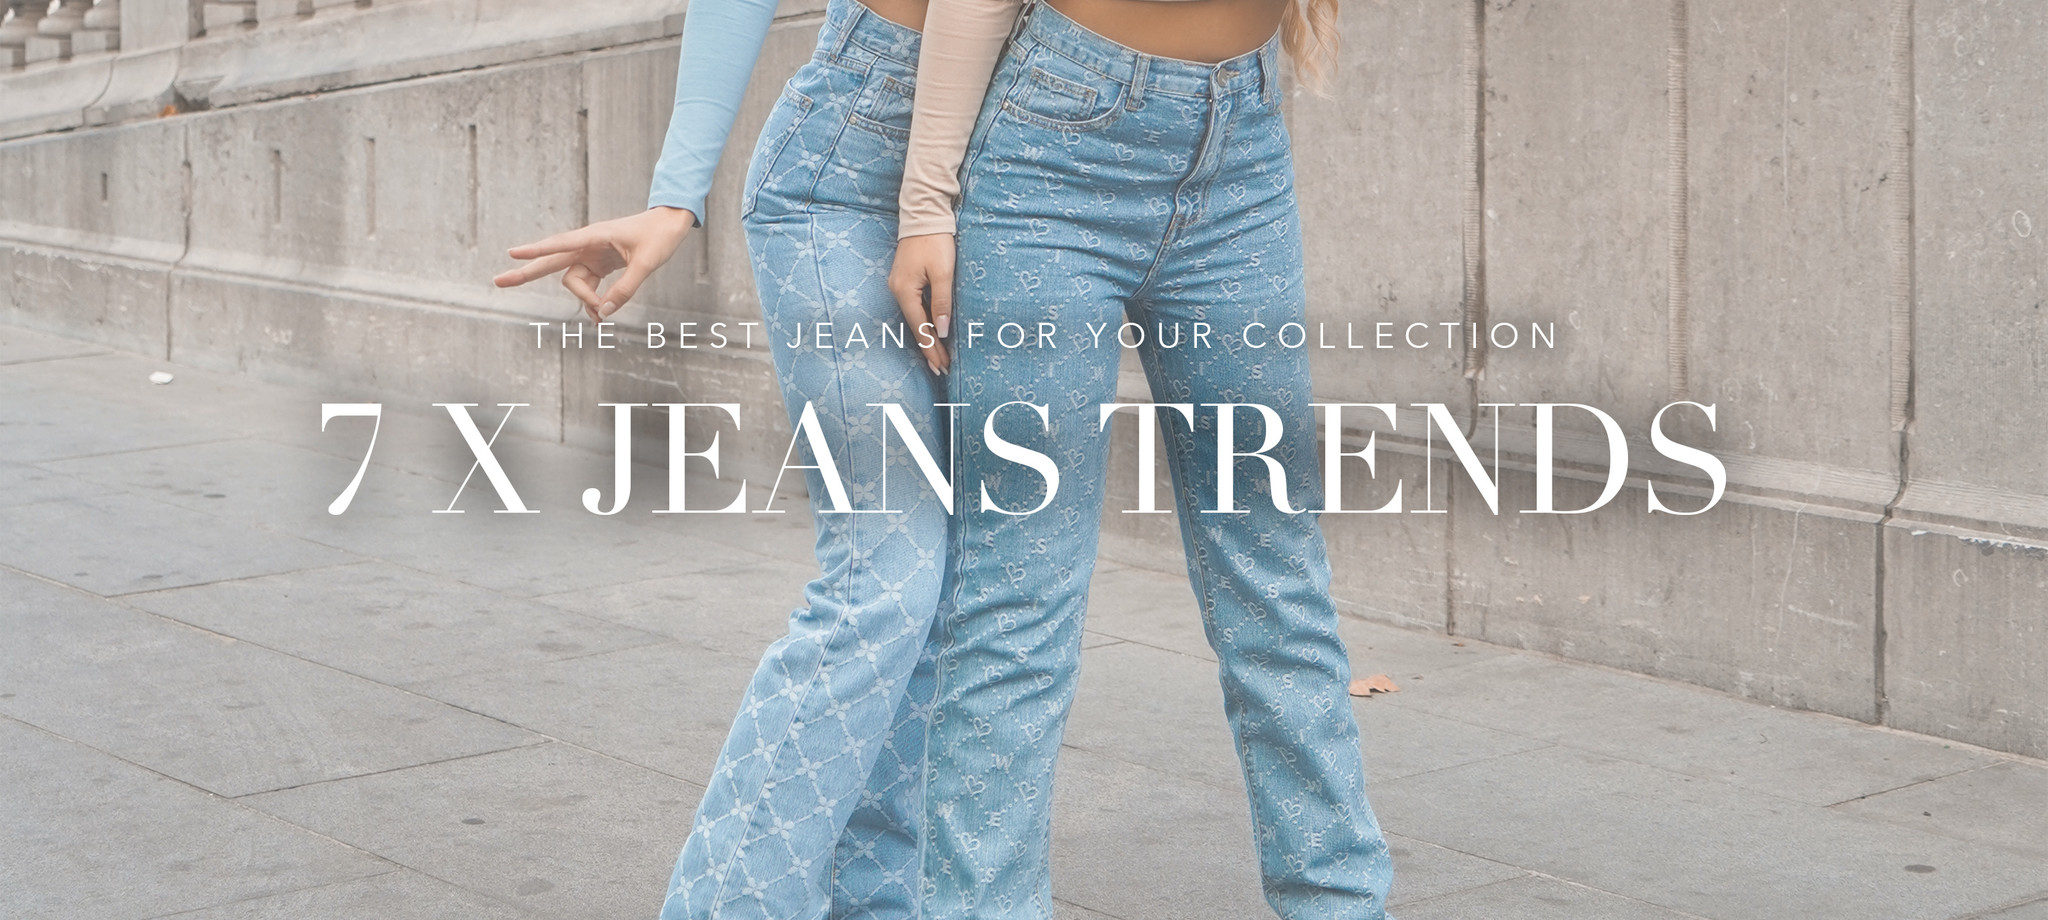 kleuring Continentaal Tot 7 x de beste jeans trends van 2023 | Shop jeans collection now | Esuals.nl  - Esuals